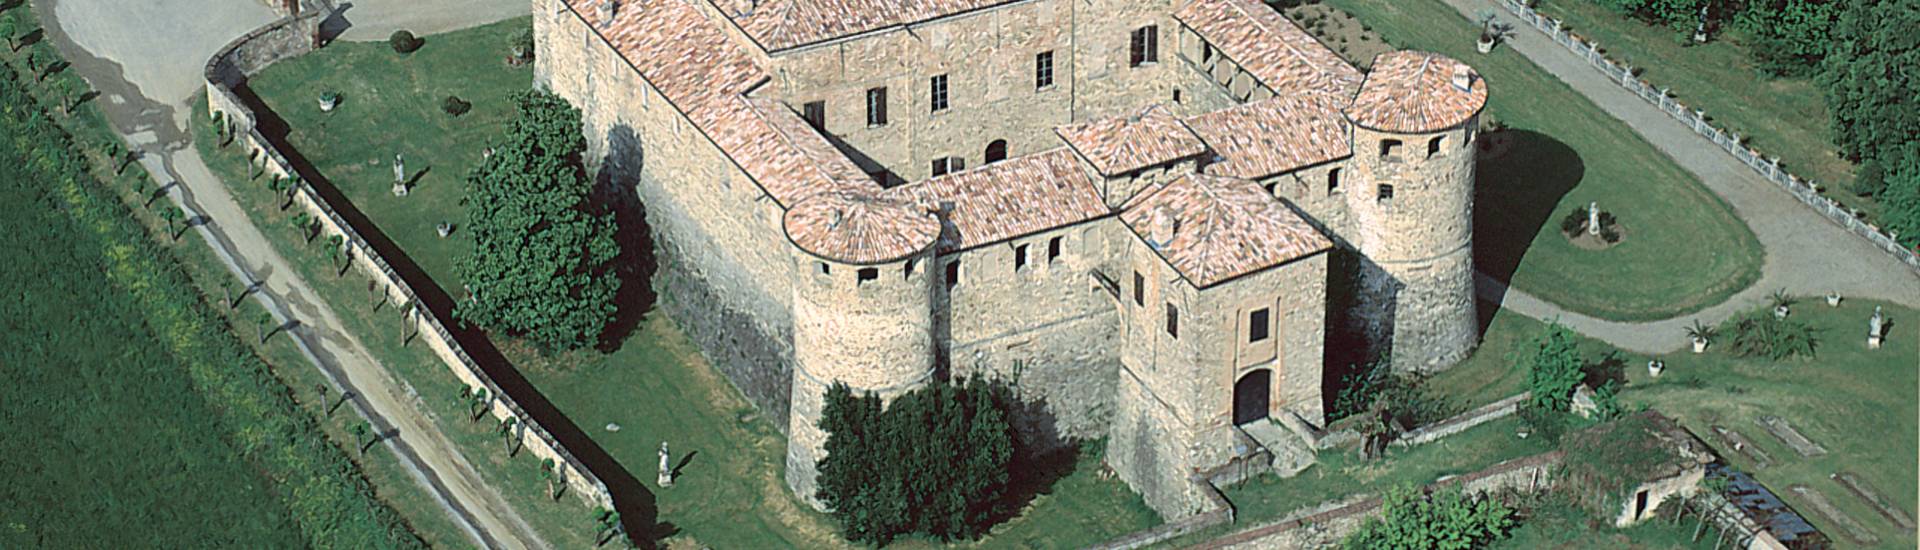 Castello e Rocca di Agazzano - panoramica photo credits: |Corrado Gonzaga| - Castello di Agazzano